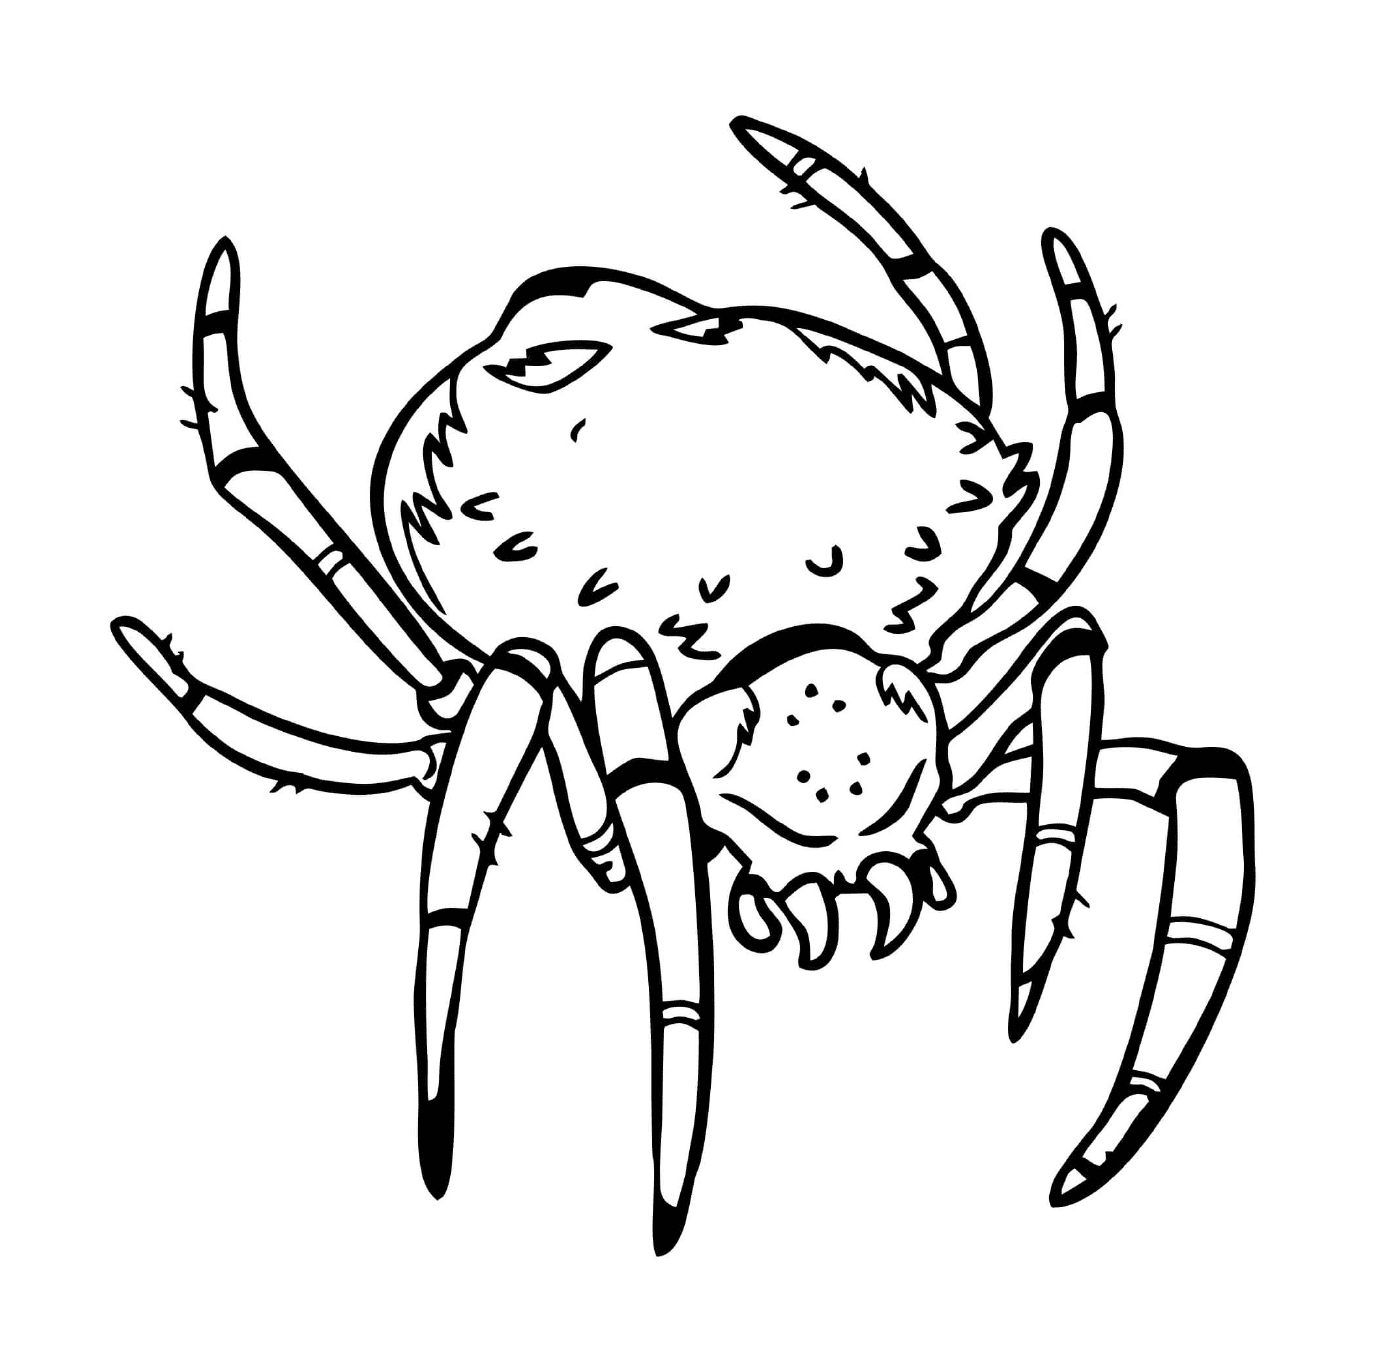  Страшный паук с большим телом 